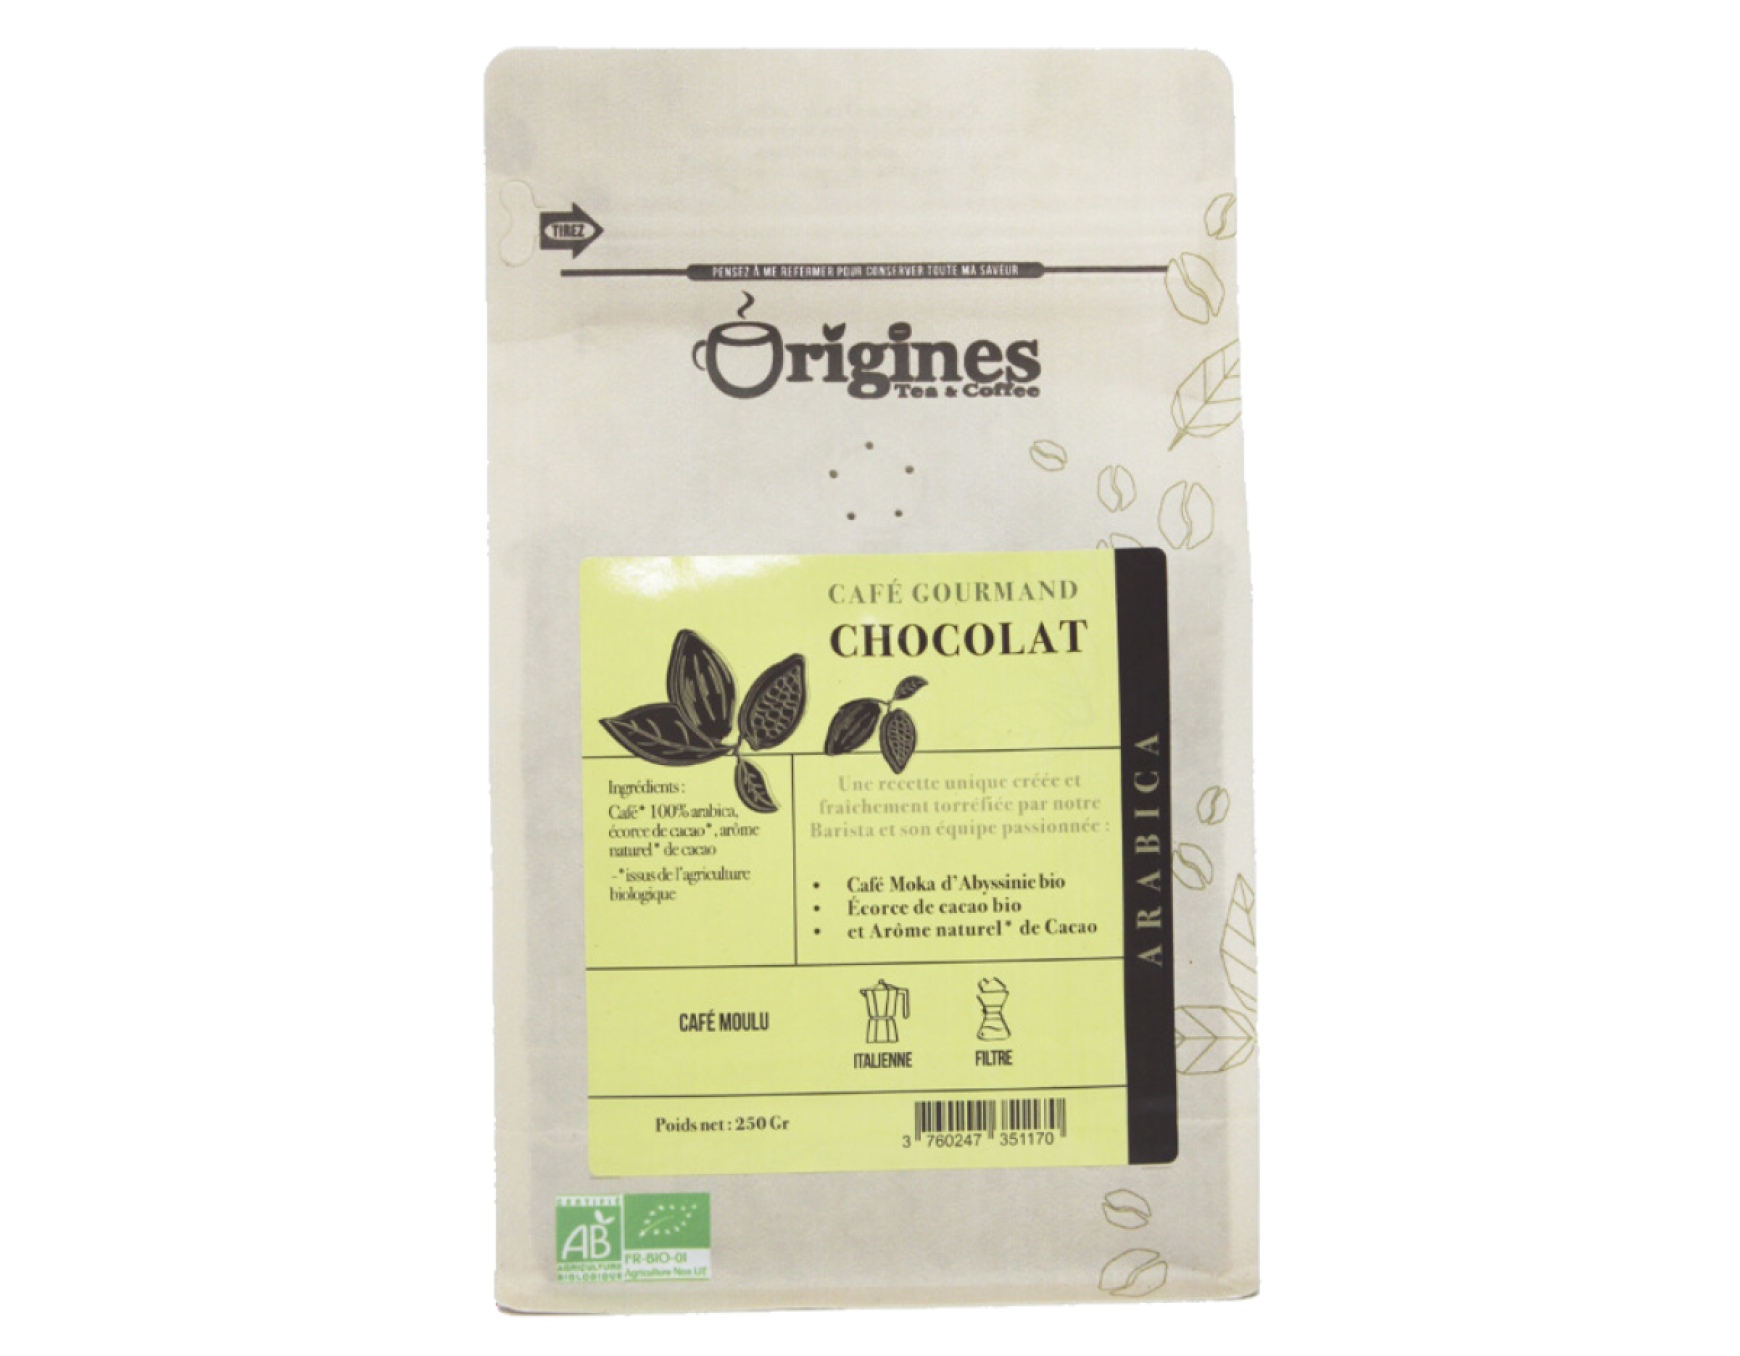 Coffret cacao bio Ecureuil « Yummy » aromatisé noisette – Quai Sud